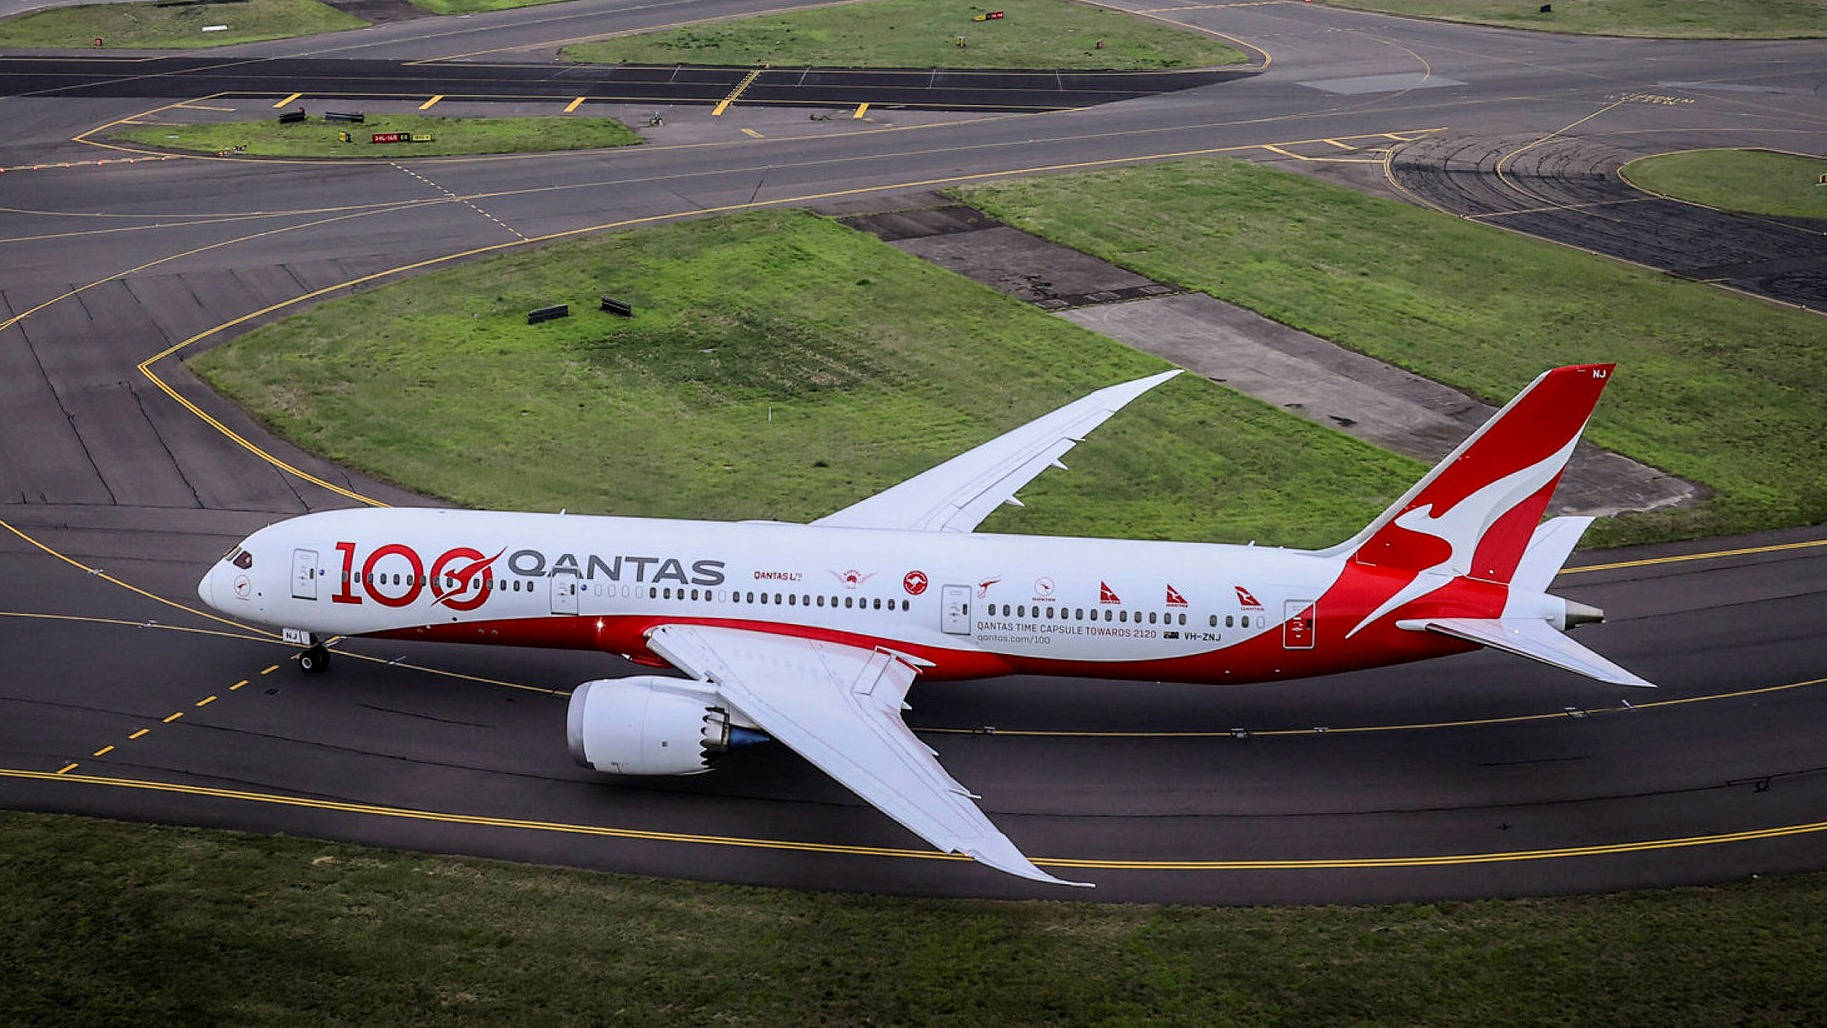 Qantaspassagier-flugzeug Auf Der Startbahn Wallpaper